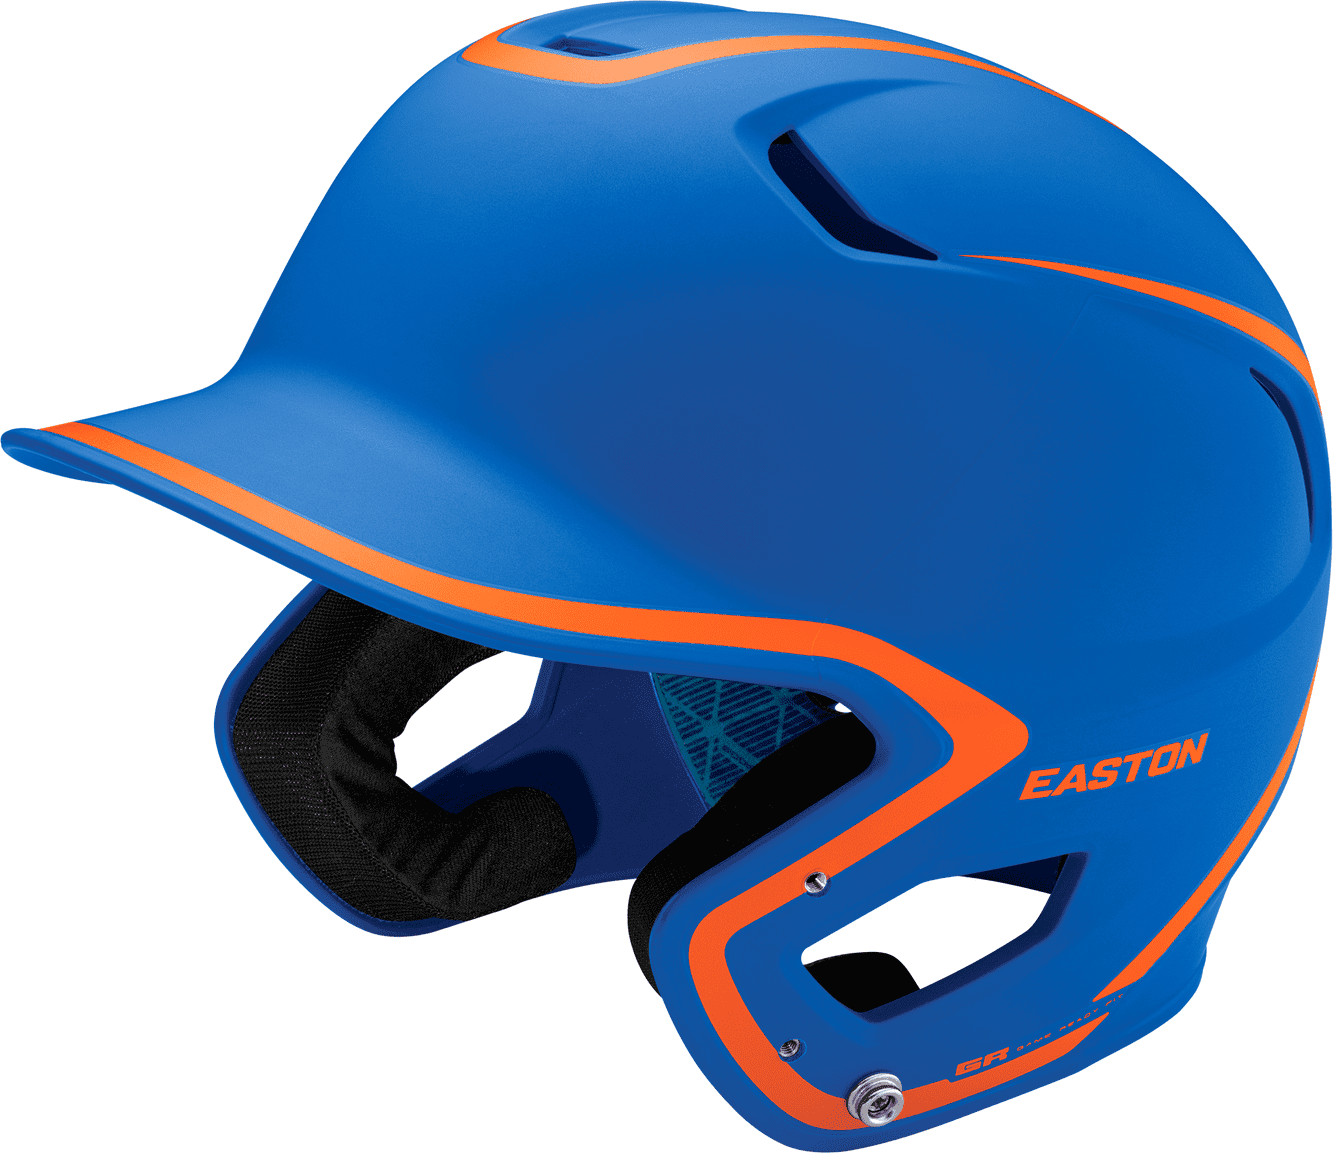 Easton Z5 2.0 Matte Two-Tone Batting Helmet - Royal Orange - HIT A Double